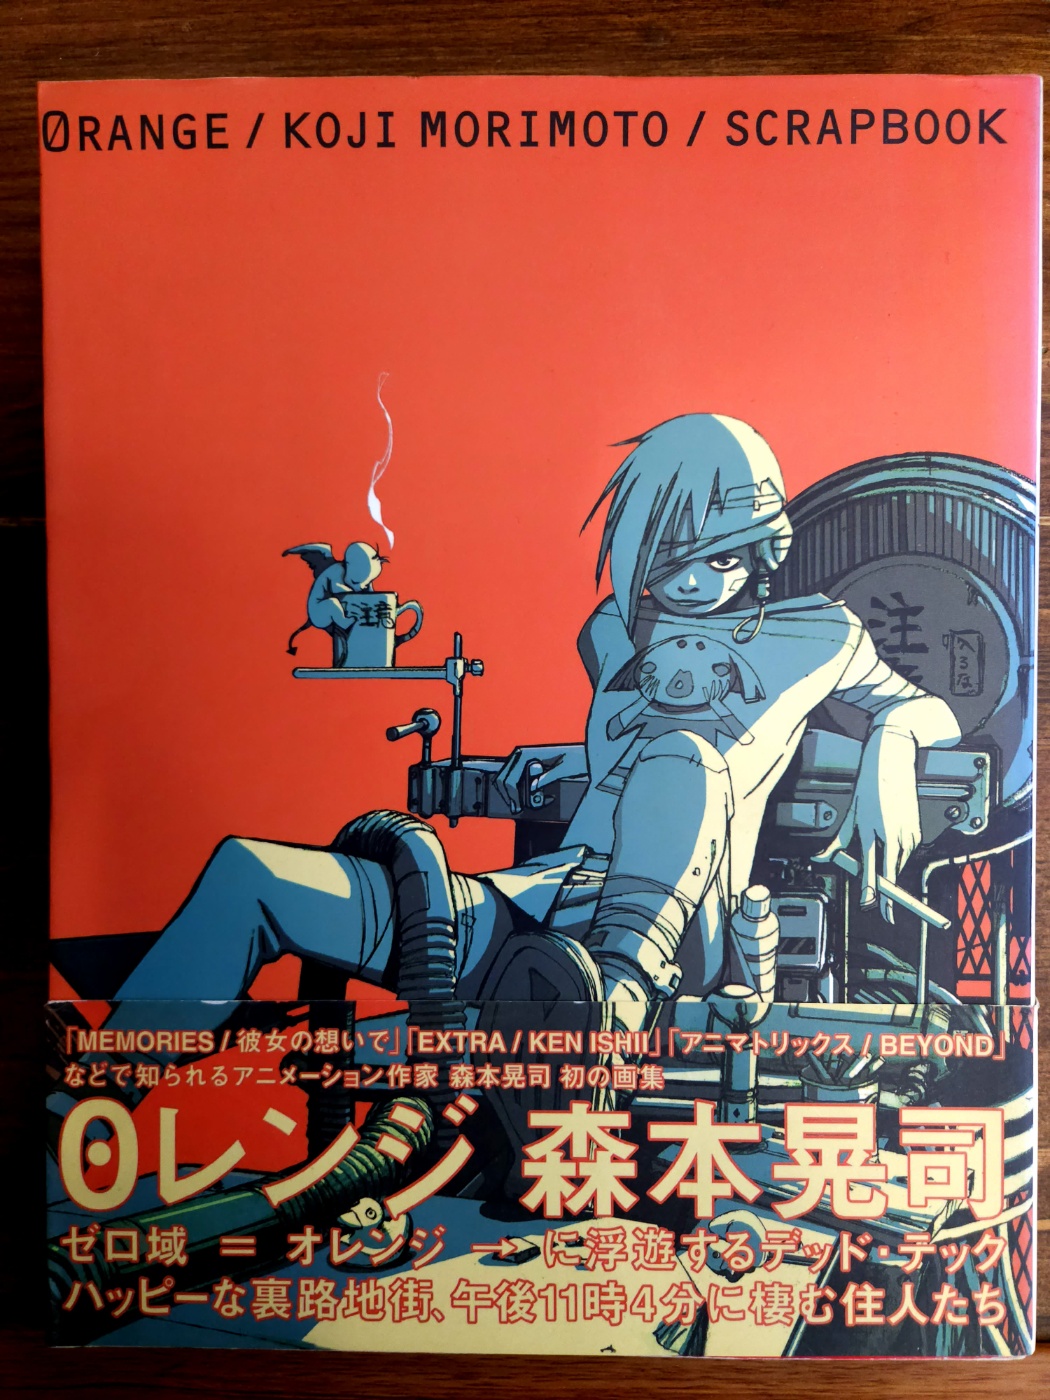 ０レンジ (0레인지)  Koji Morimoto Scrapbook - Orange /일본원서/큰책)